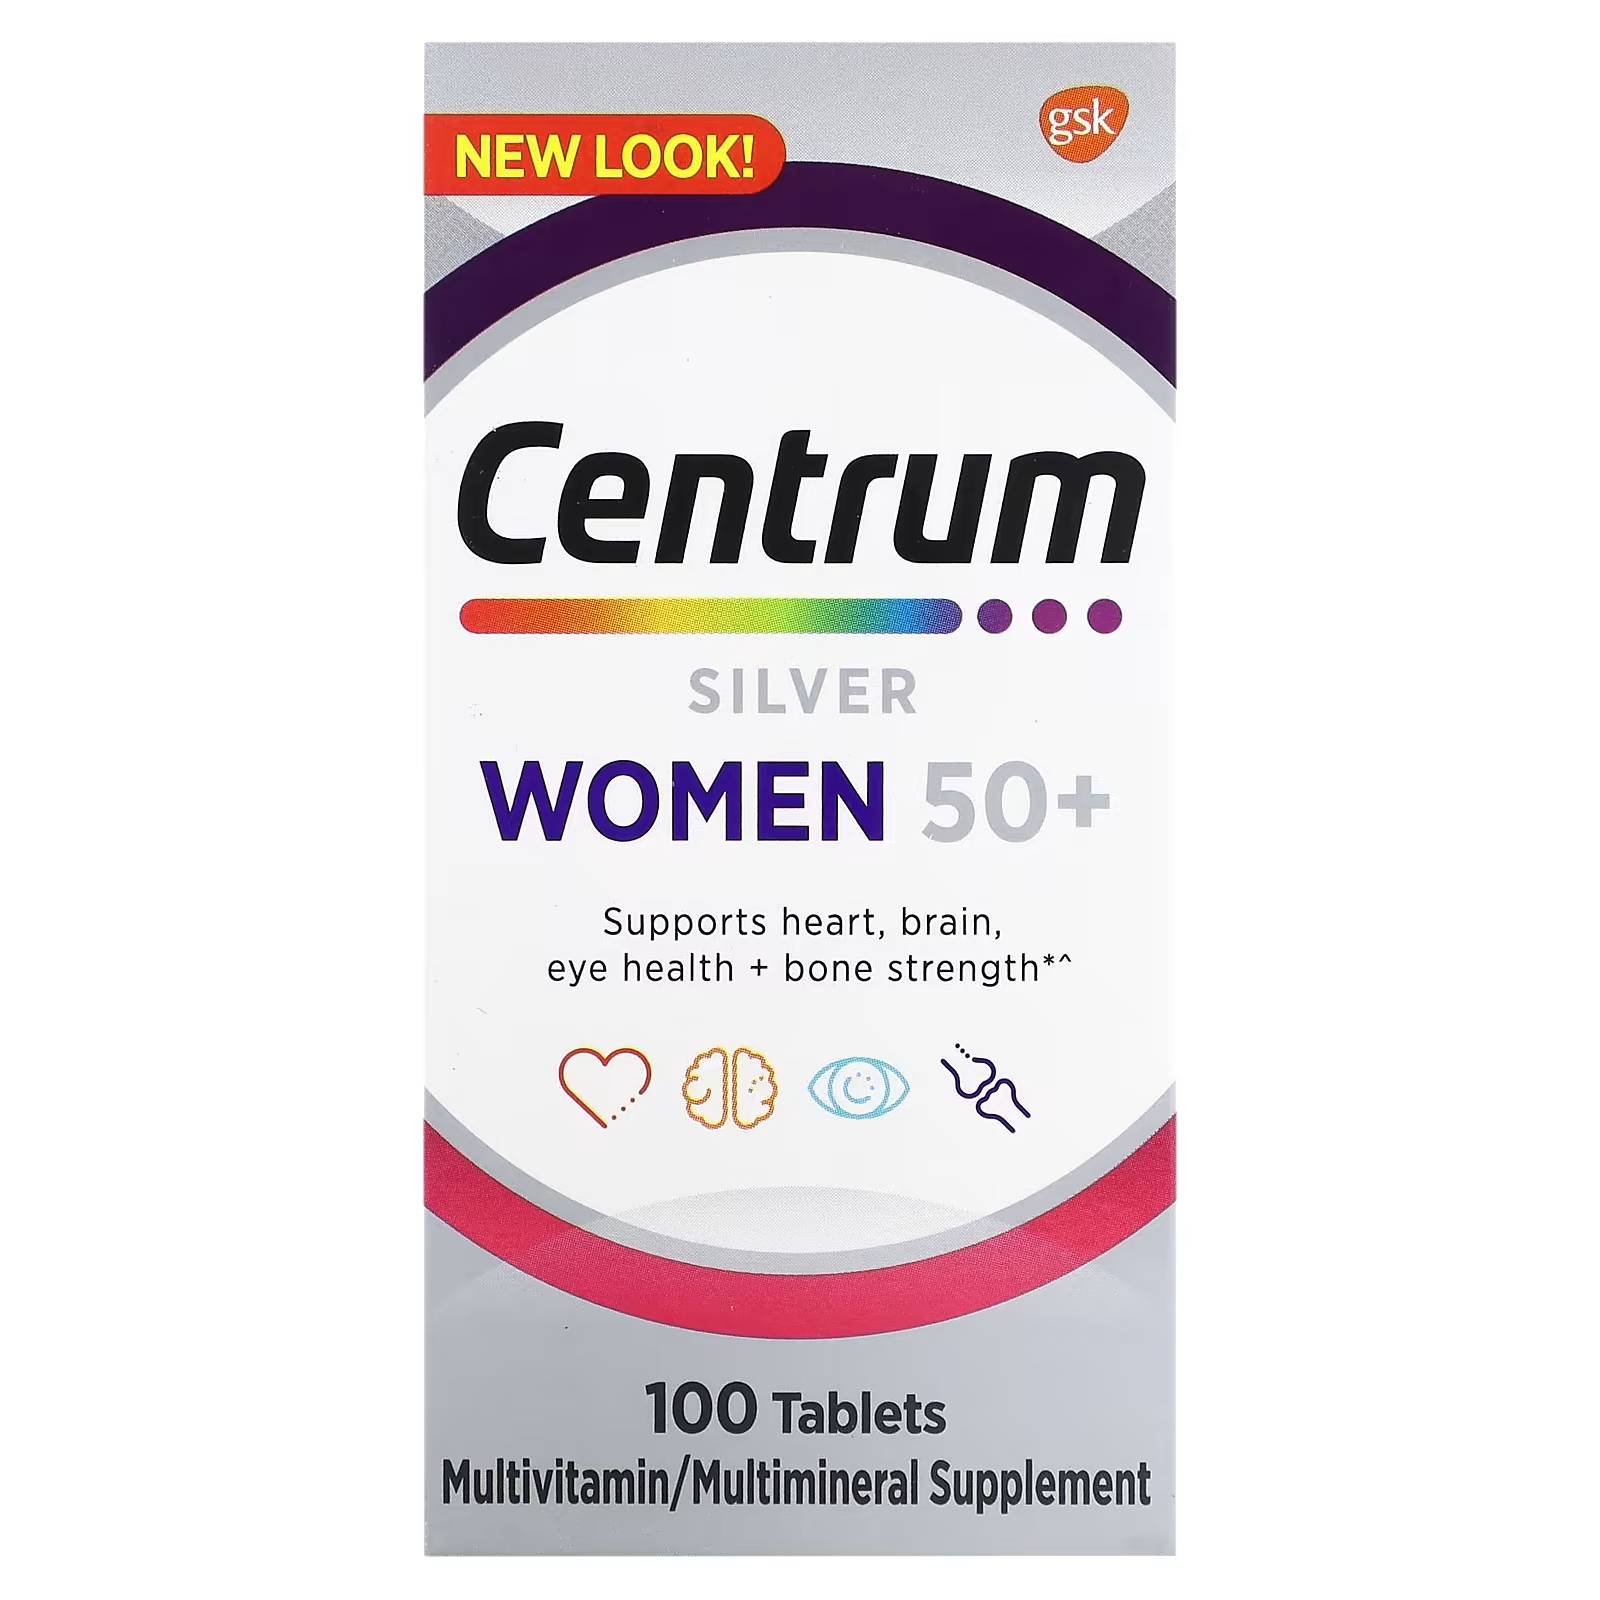 Мультивитаминная добавка Centrum Silver для женщин 50+, 100 таблеток centrum взрослые от 50 лет в размерах мини 180 таблеток